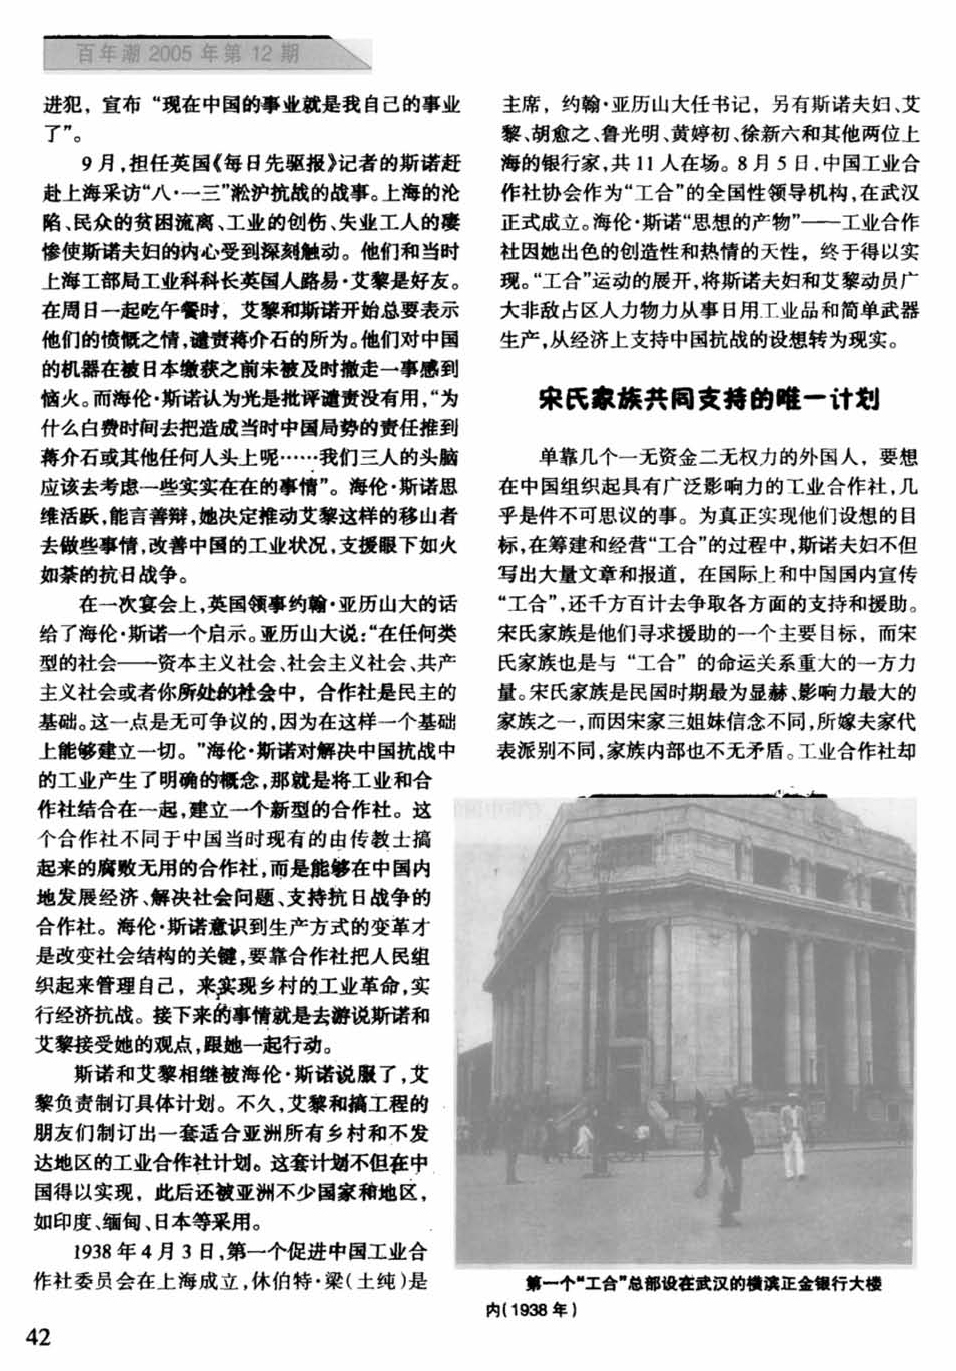 斯诺夫妇与抗战中的“中国工业合作社”_页面_2.jpg